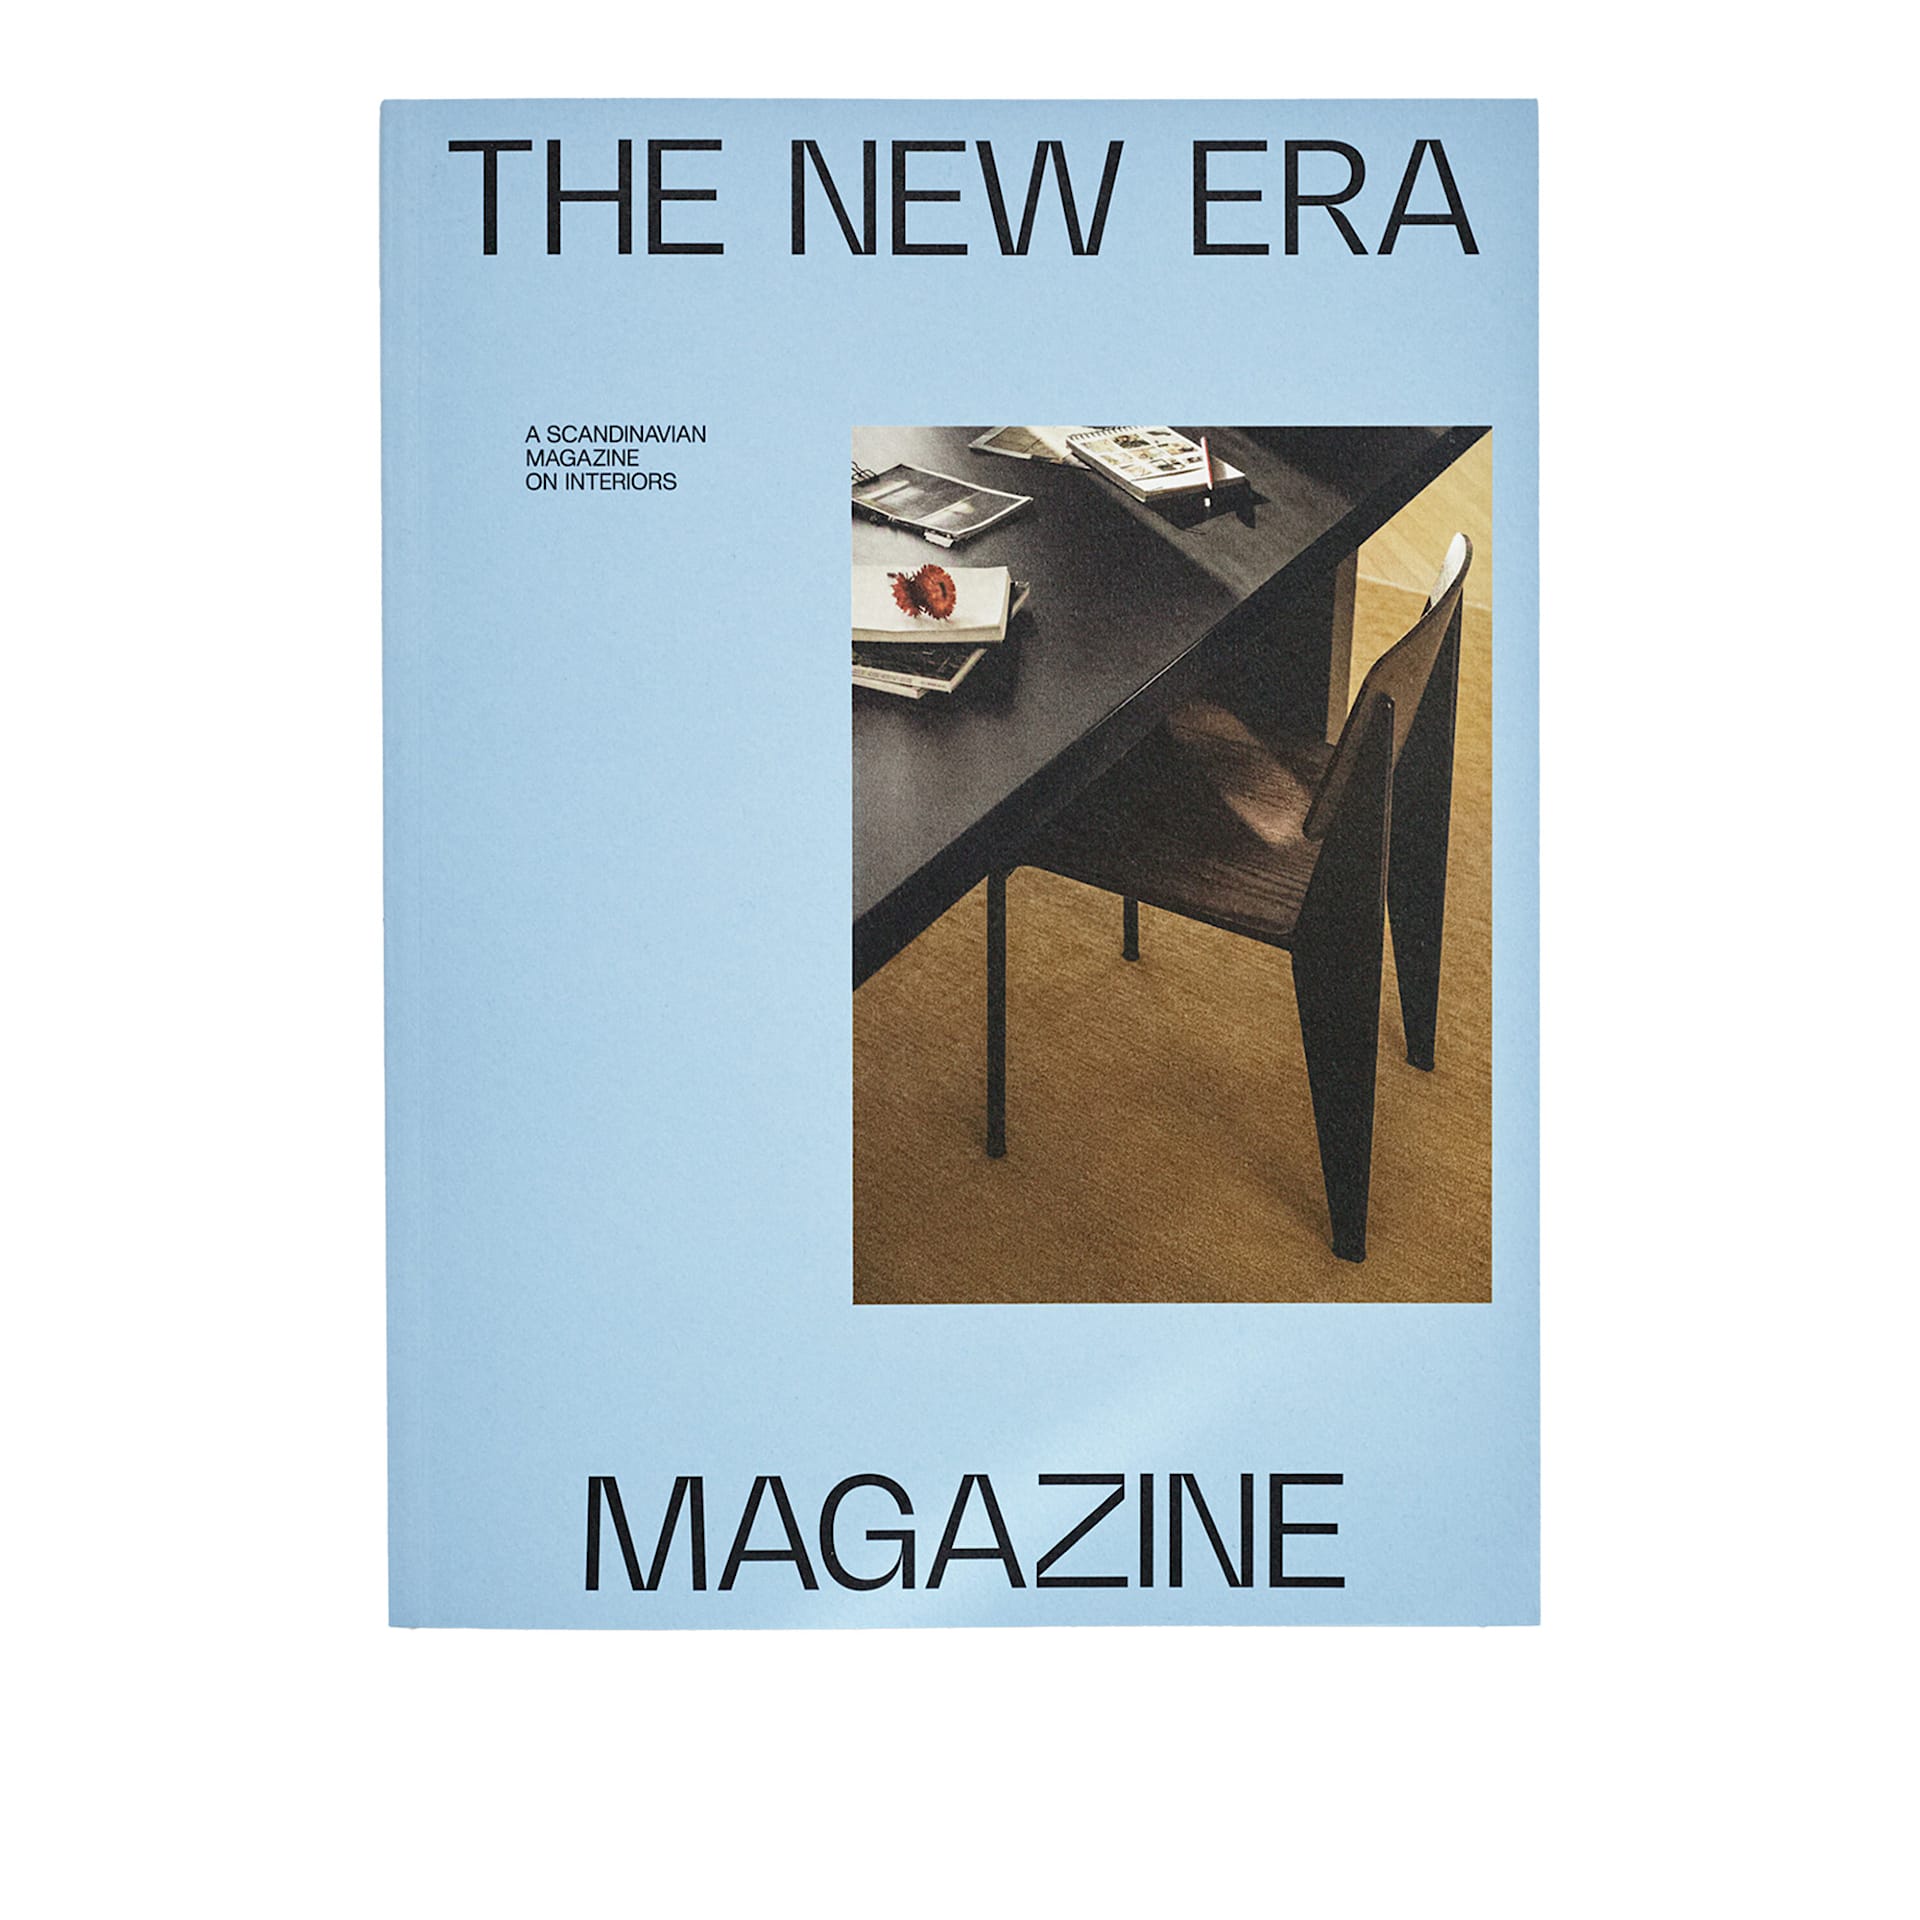 The New Era Magazine Issue 02 - The New Era - NO GA